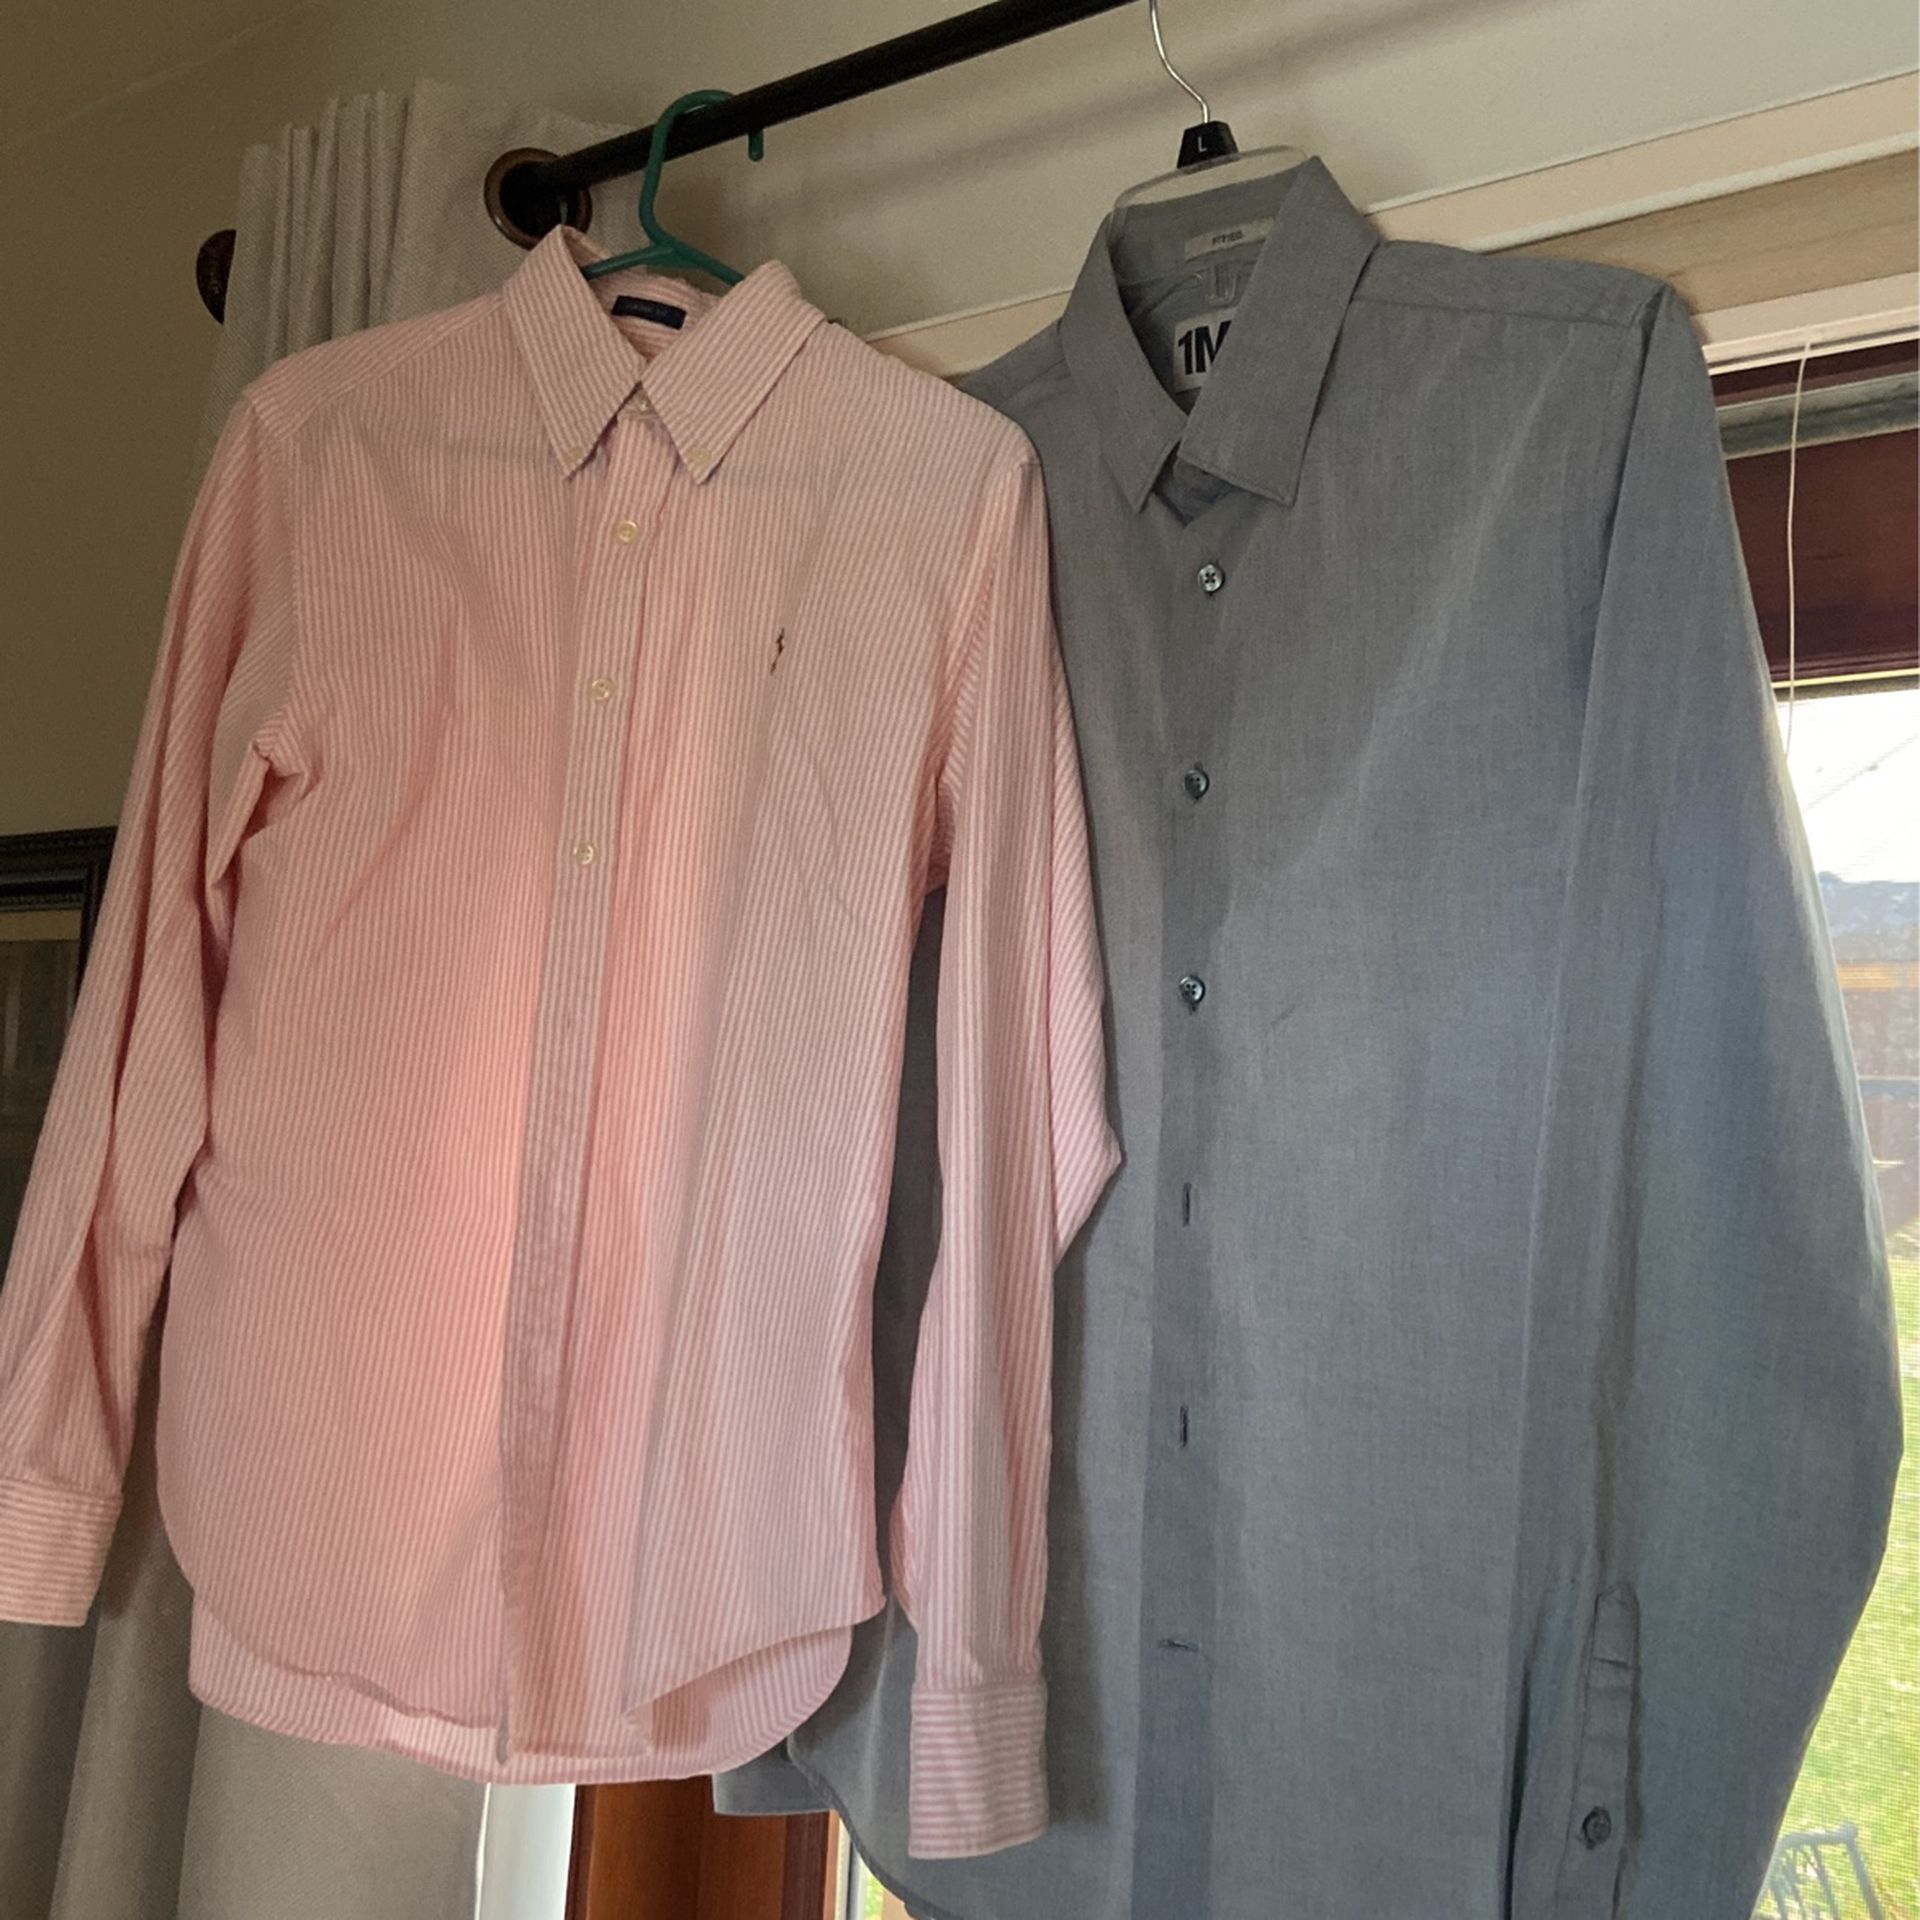 2 Boys Button Down Dress Shirts.  Size 12/14